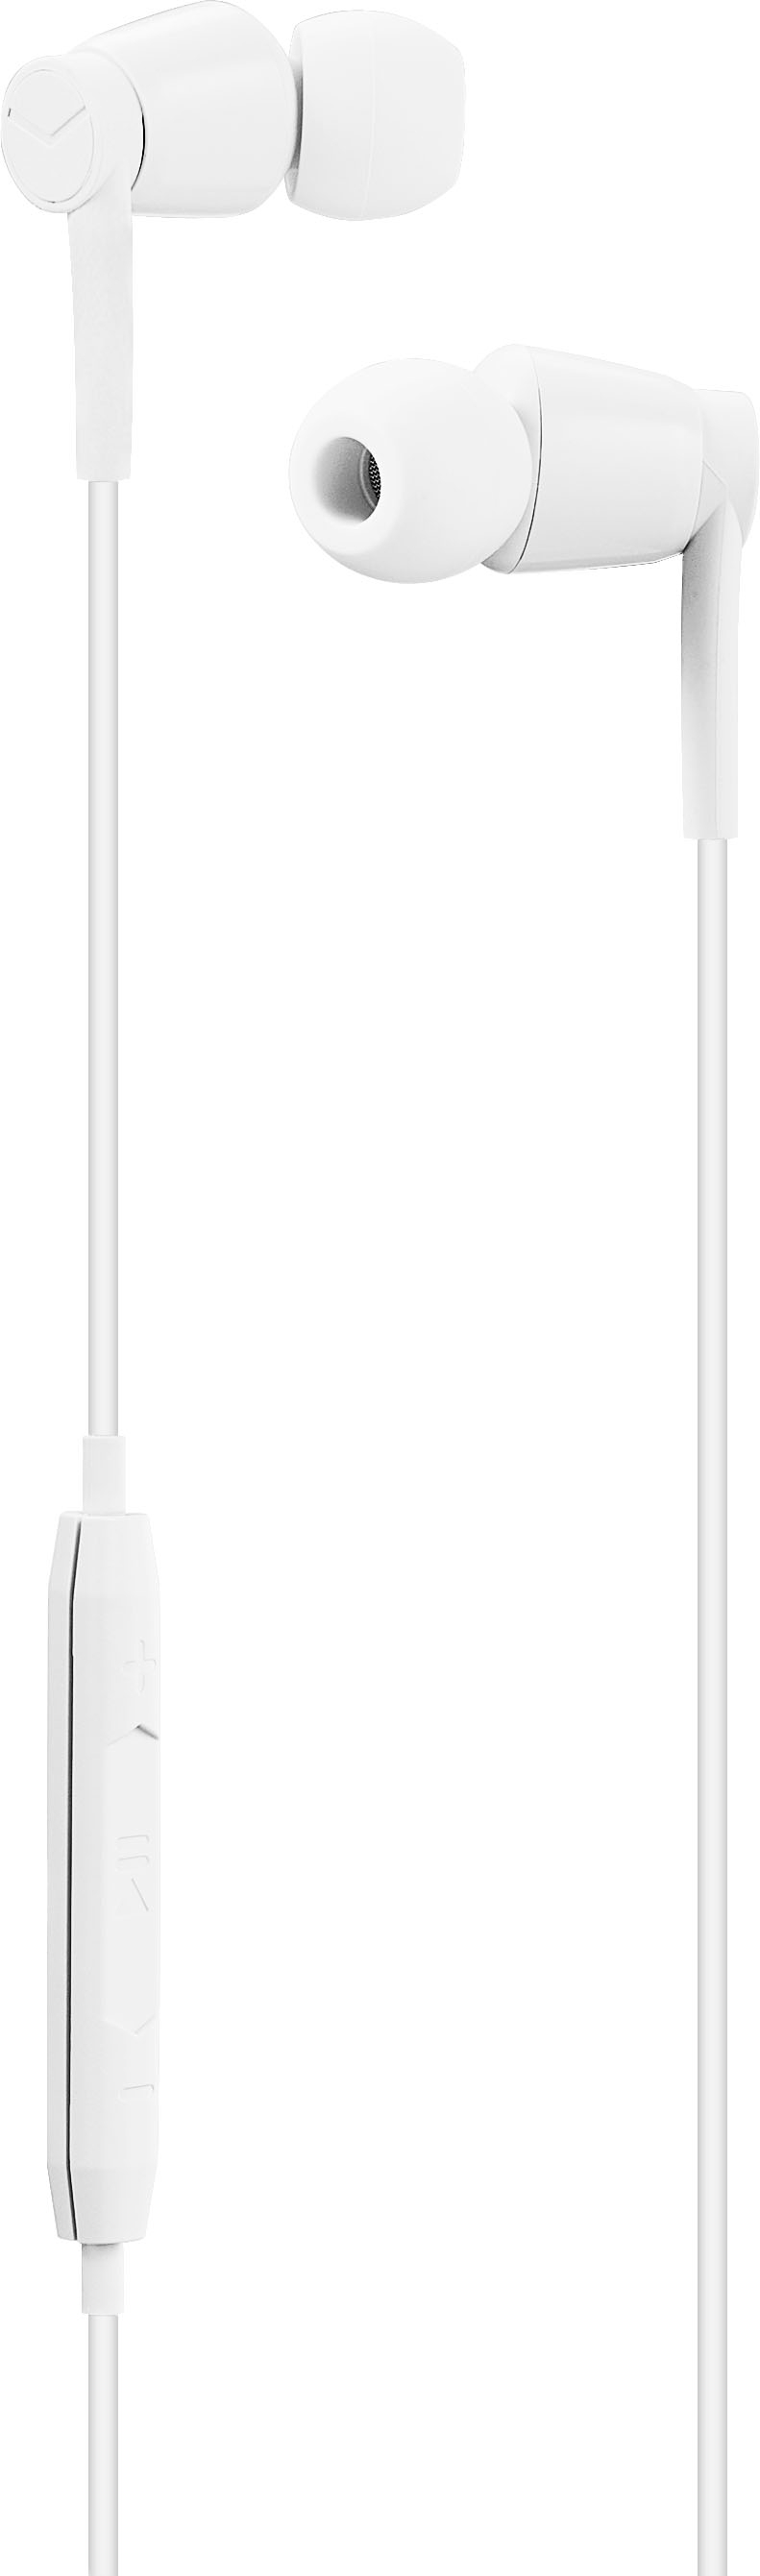 Auricular Compatible iPhone Lightning Conexión A